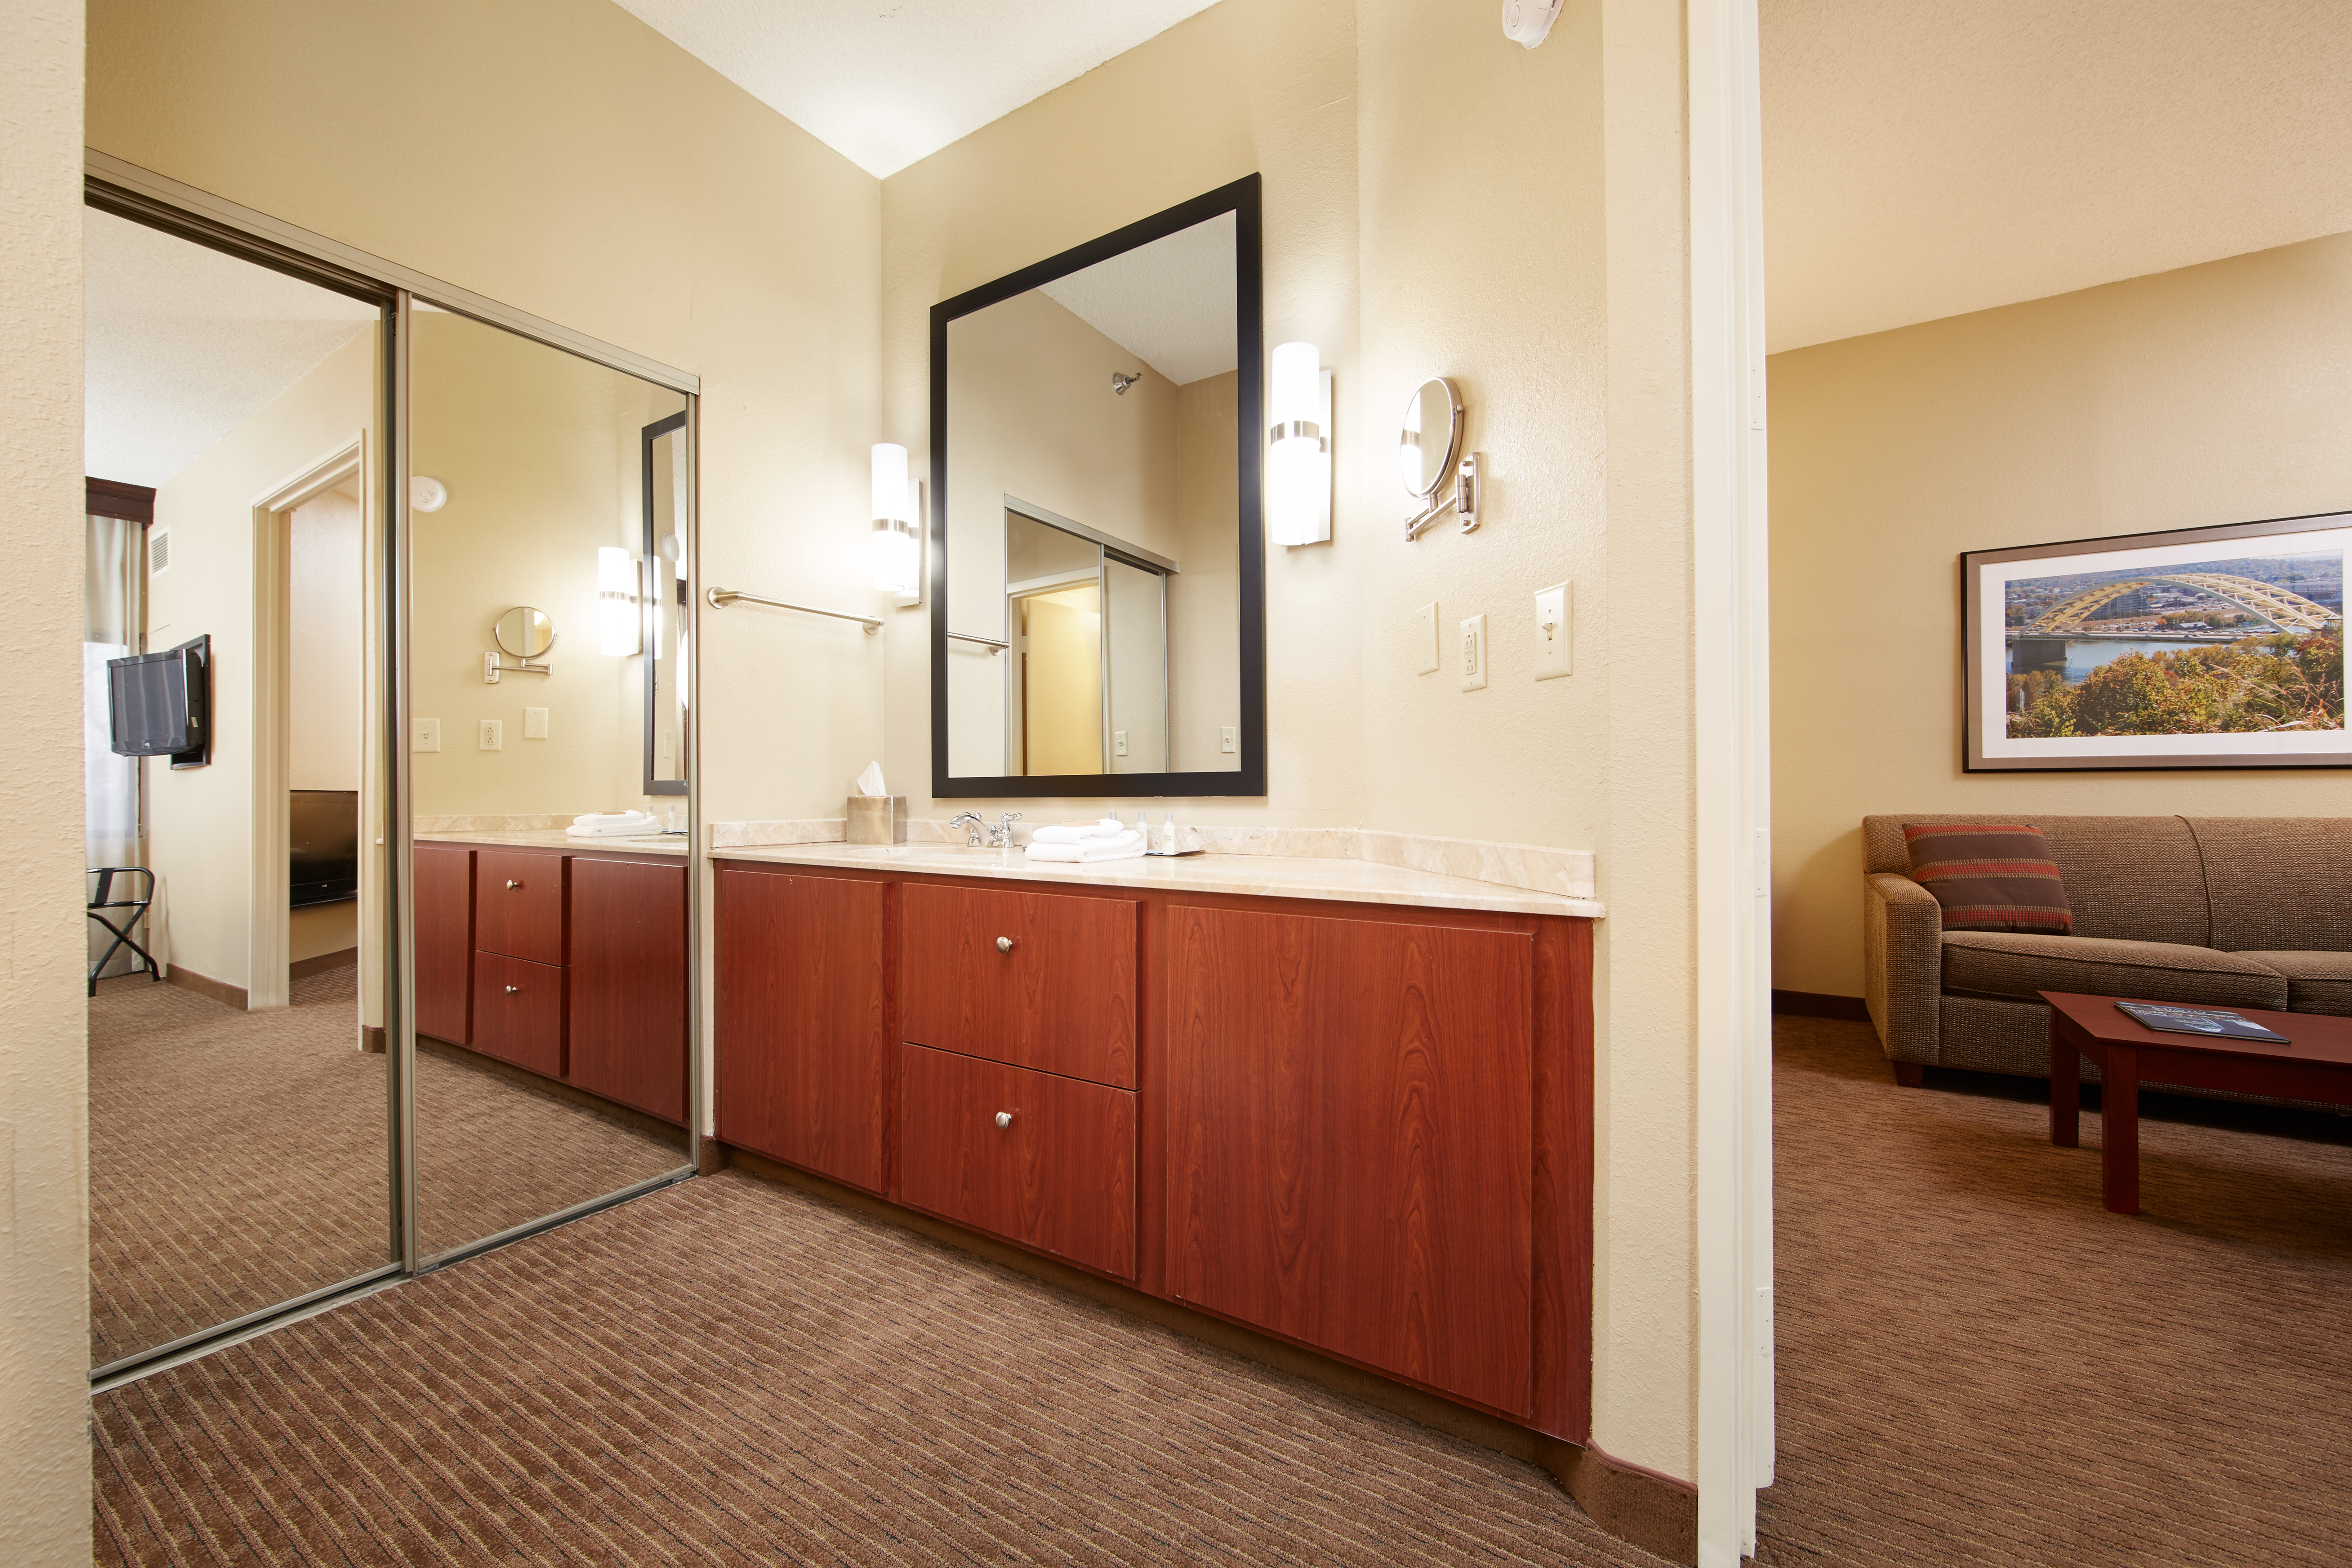 King Suite Bathroom Vanity Area